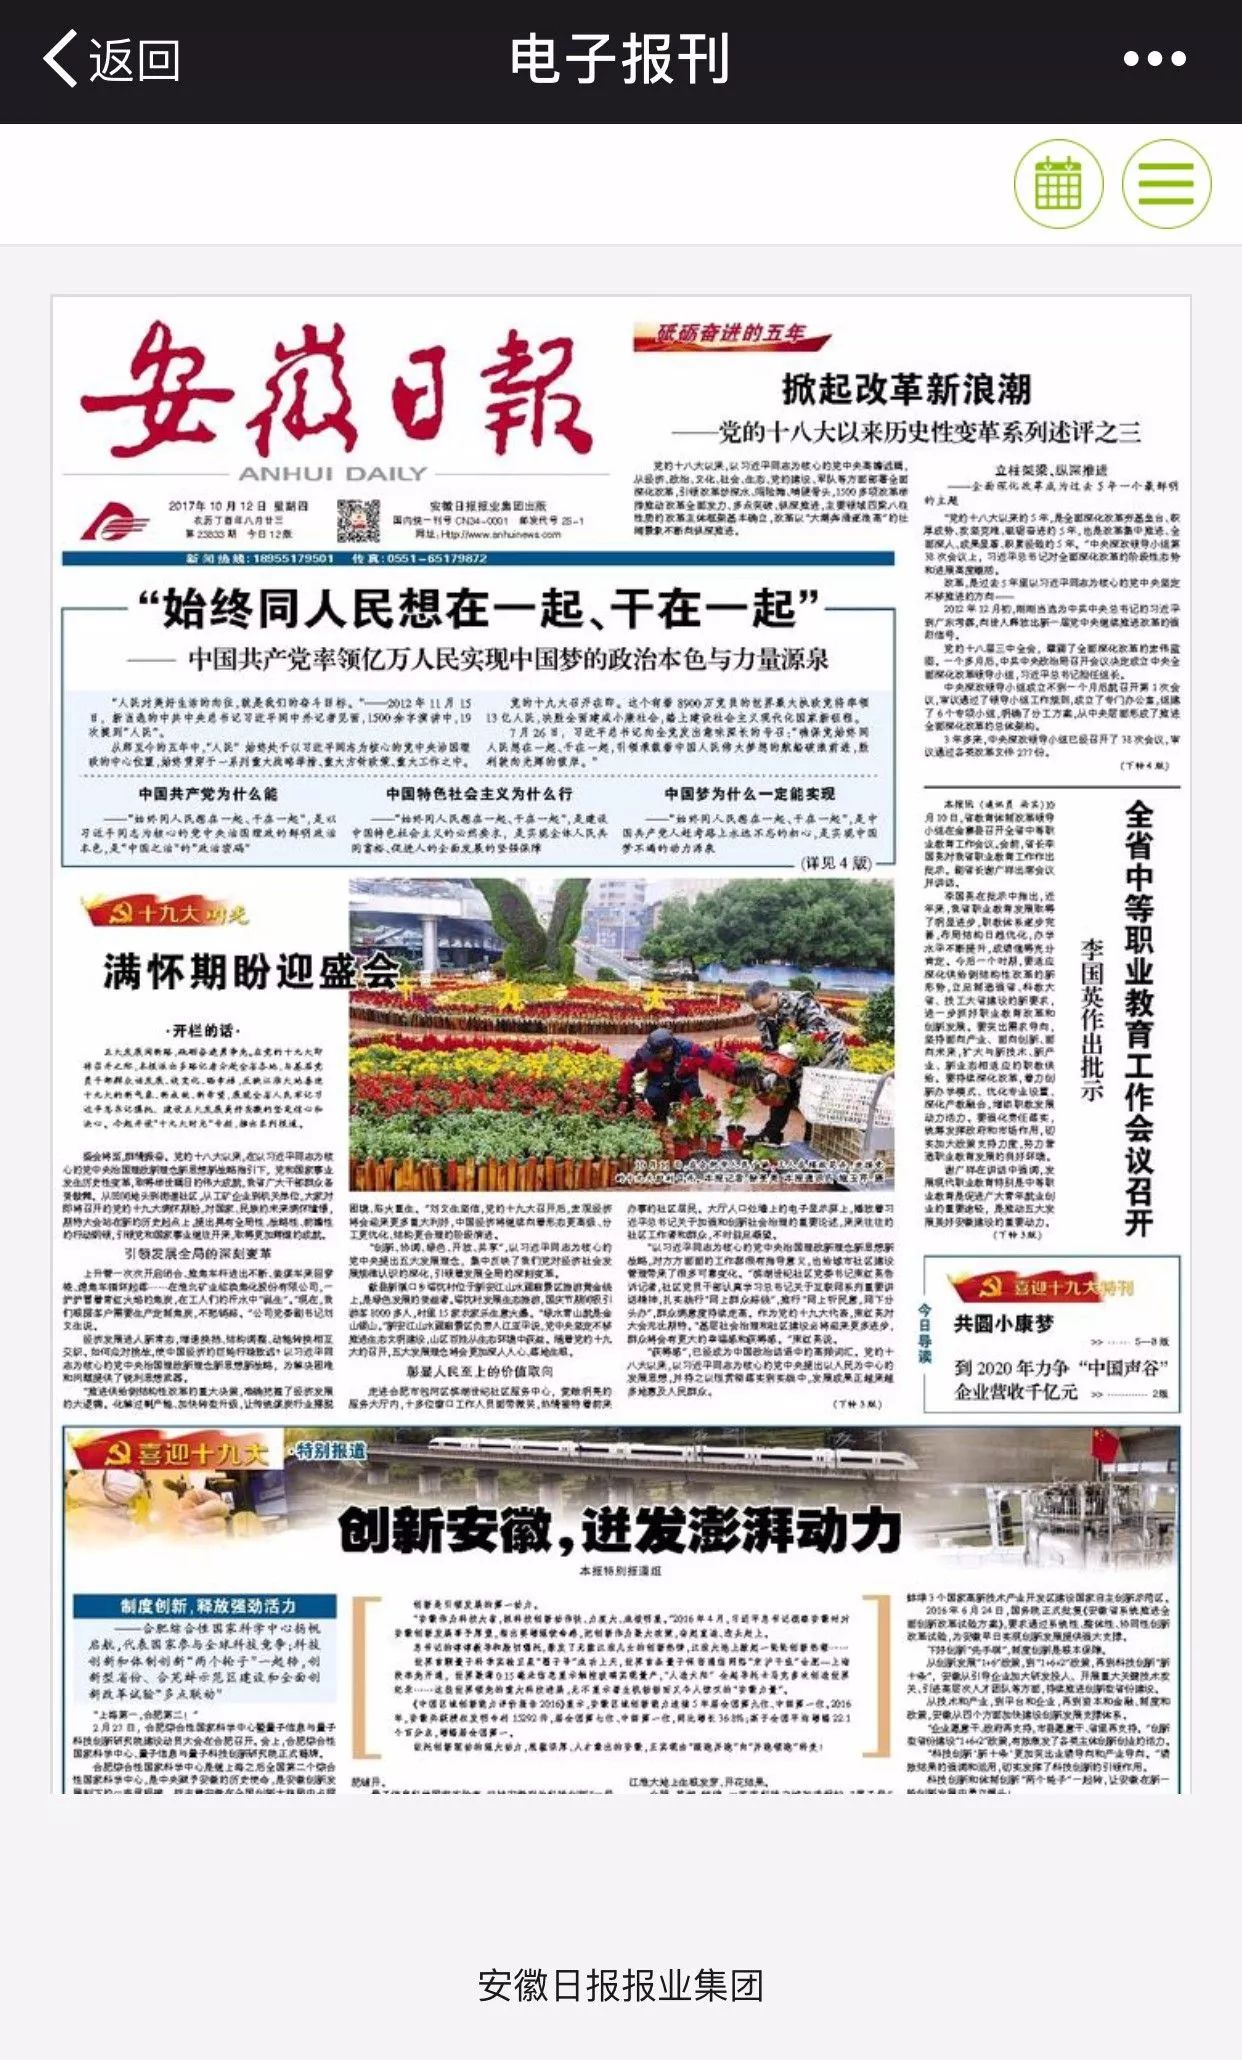 安徽日报电子版上线了!_搜狐社会_搜狐网